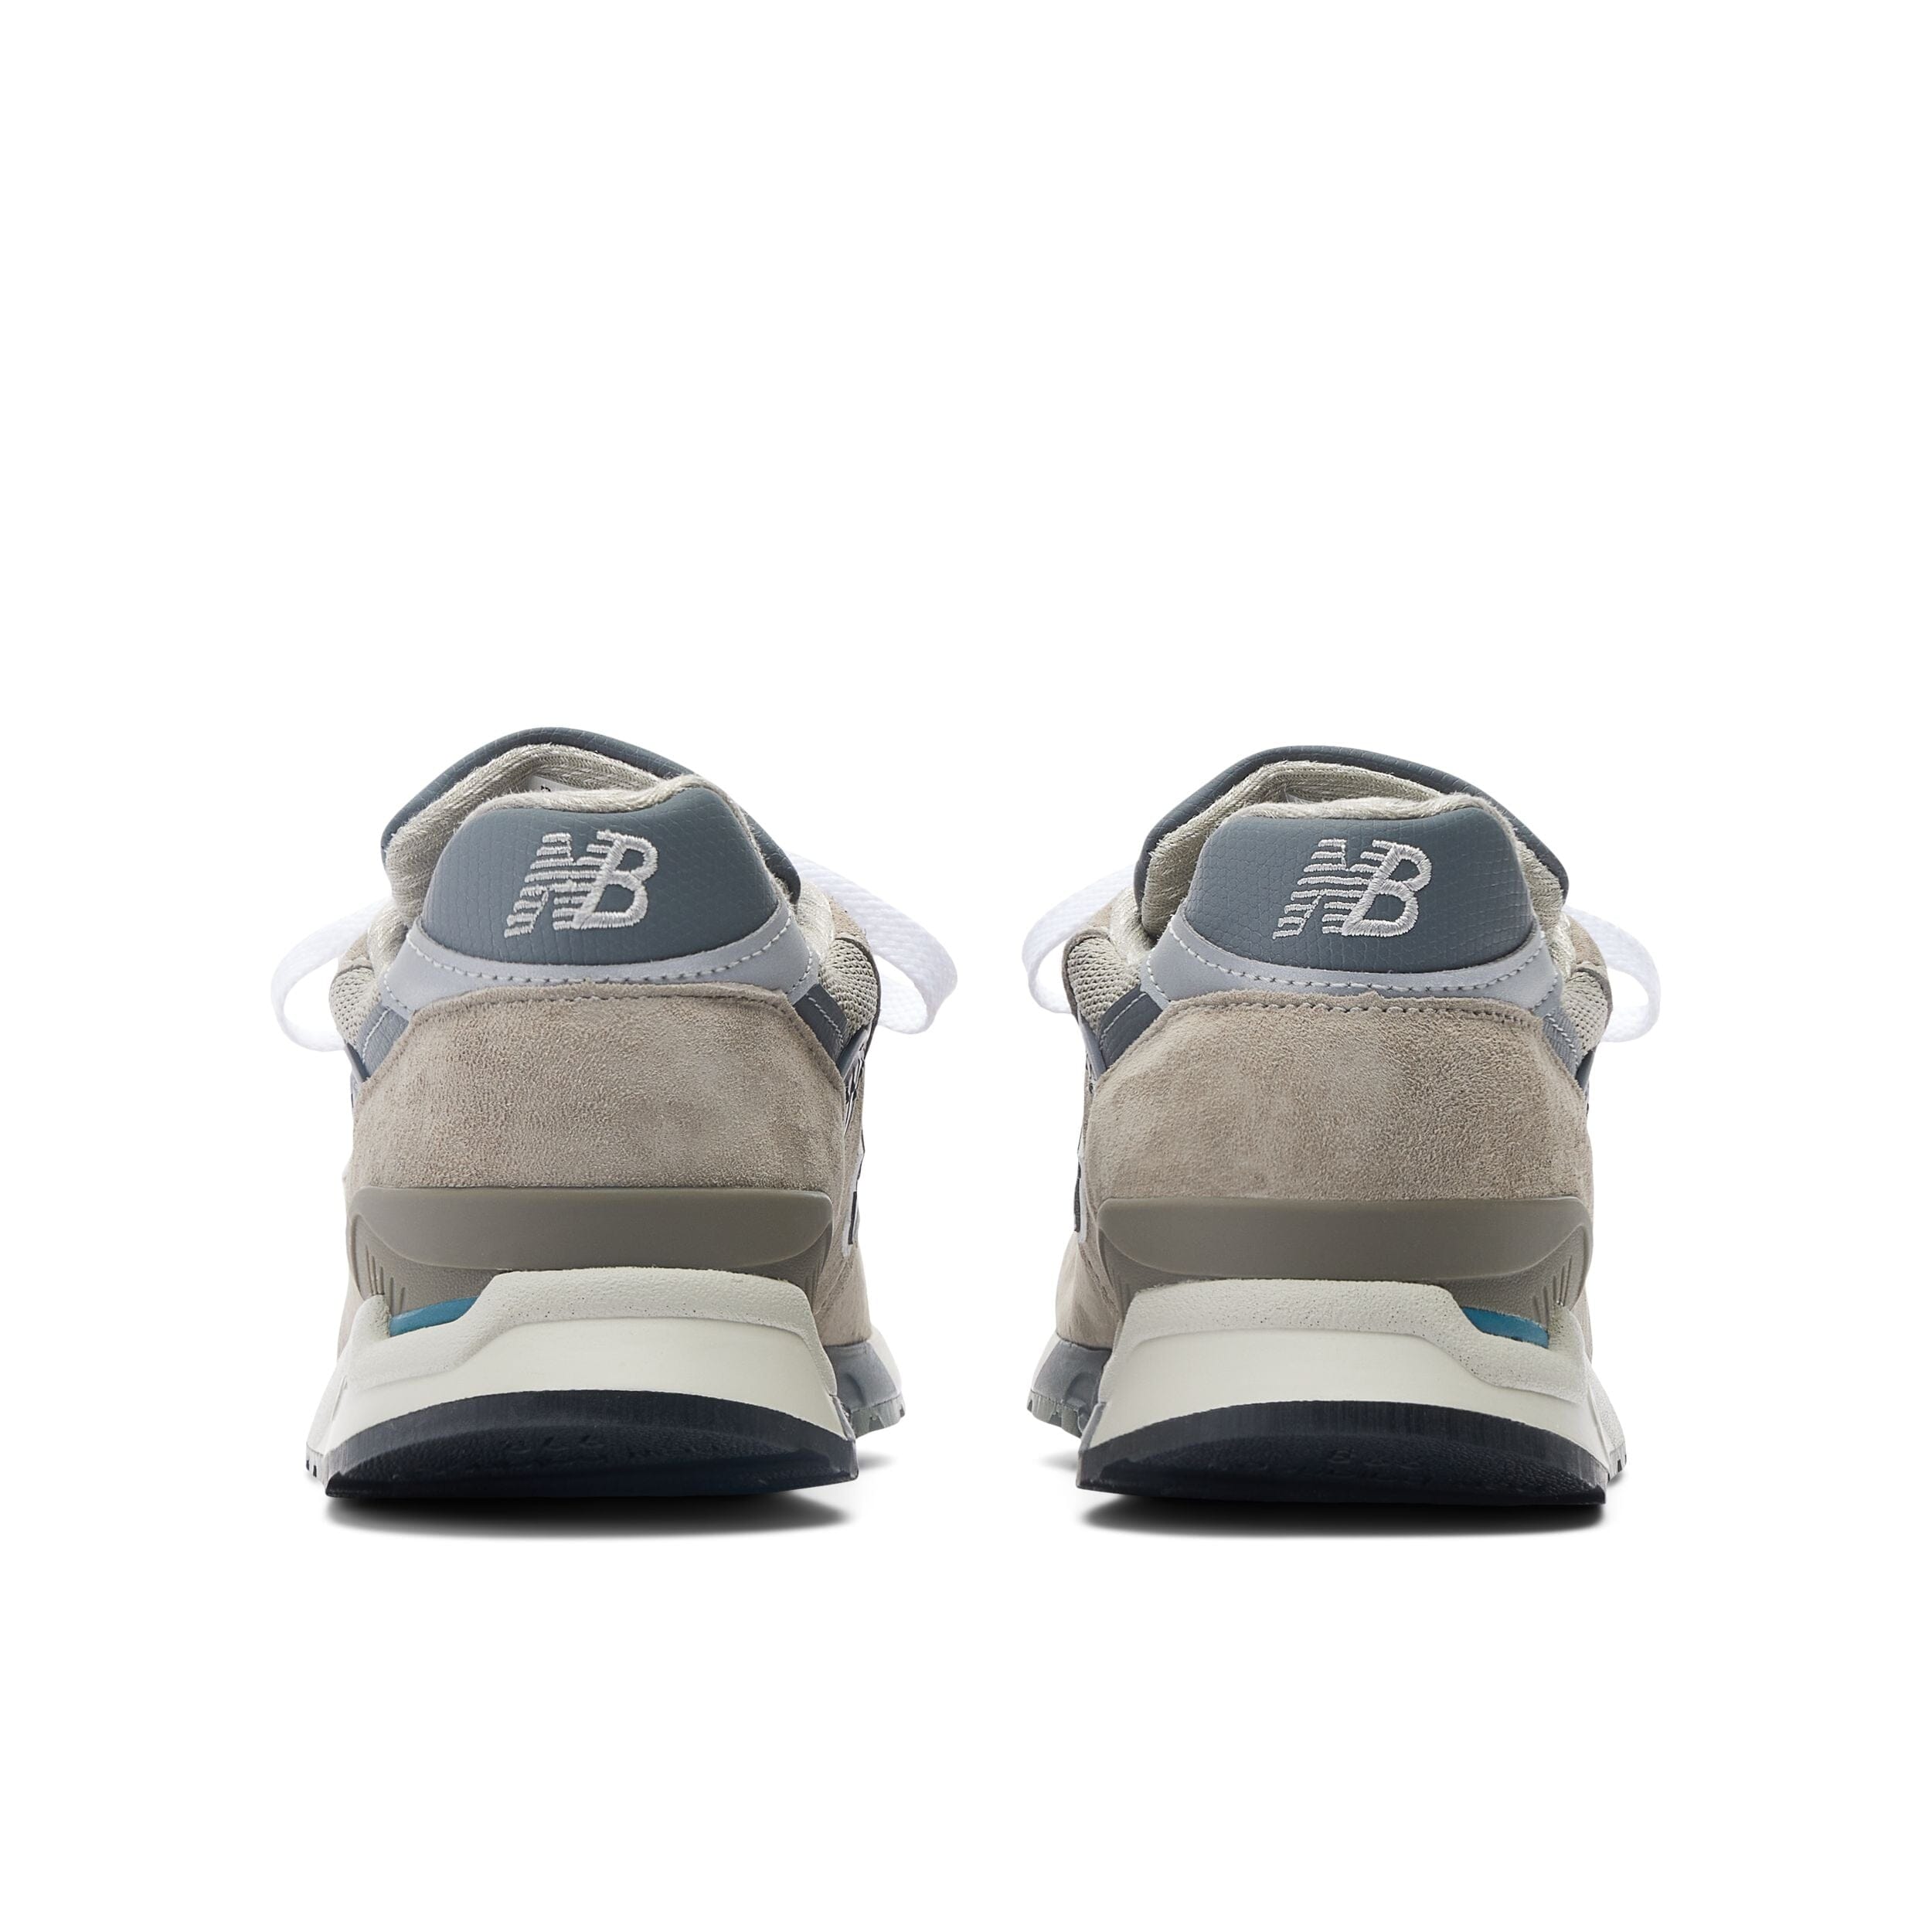 NEW BALANCE - Sneakers U998GR - Grigio Scarpe Uomo NEW BALANCE - Collezione Uomo 